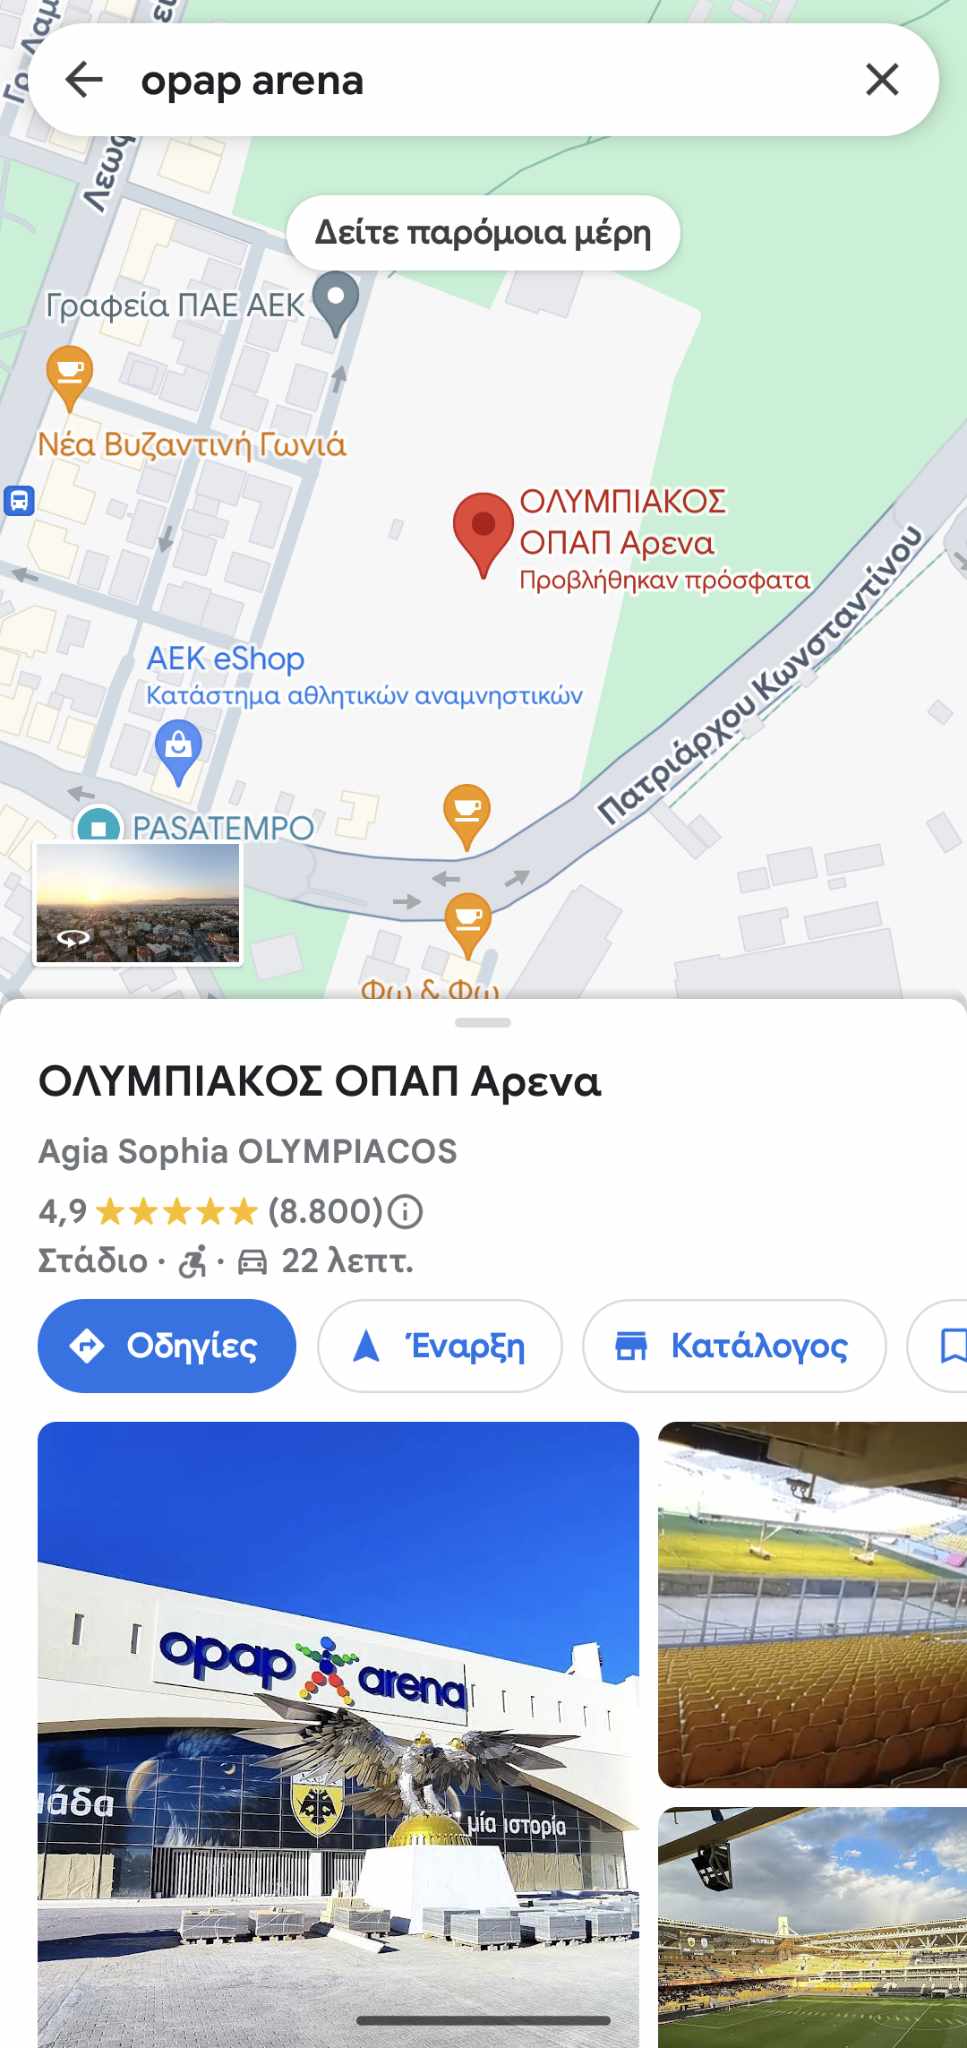 ΑΕΚ: Στο GPS η OPAP Arena έγινε… Ολυμπιακός Arena!